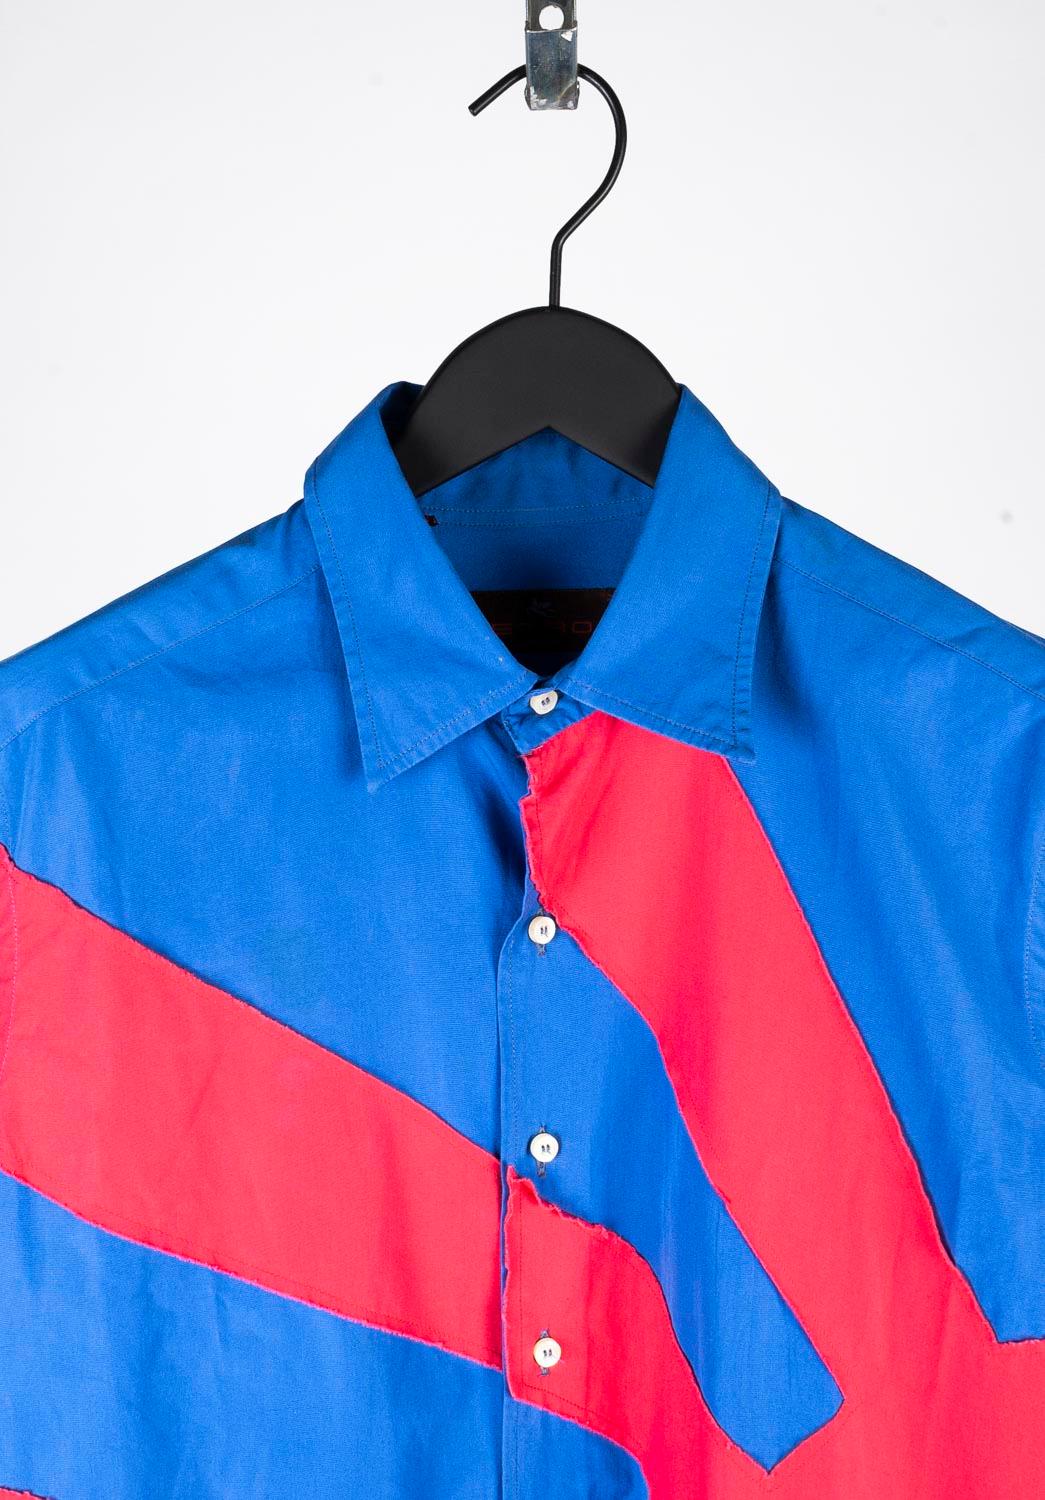 Etro Slim Fit Herren Hemd, S463
Farbe: Blau/Rot
(Eine tatsächliche Farbe kann ein wenig variieren aufgrund individueller Computer-Bildschirm Interpretation)
MATERIAL: 100% Baumwolle
Tag Größe: M
Dieses Hemd ist von hervorragender Qualität. Bewertung